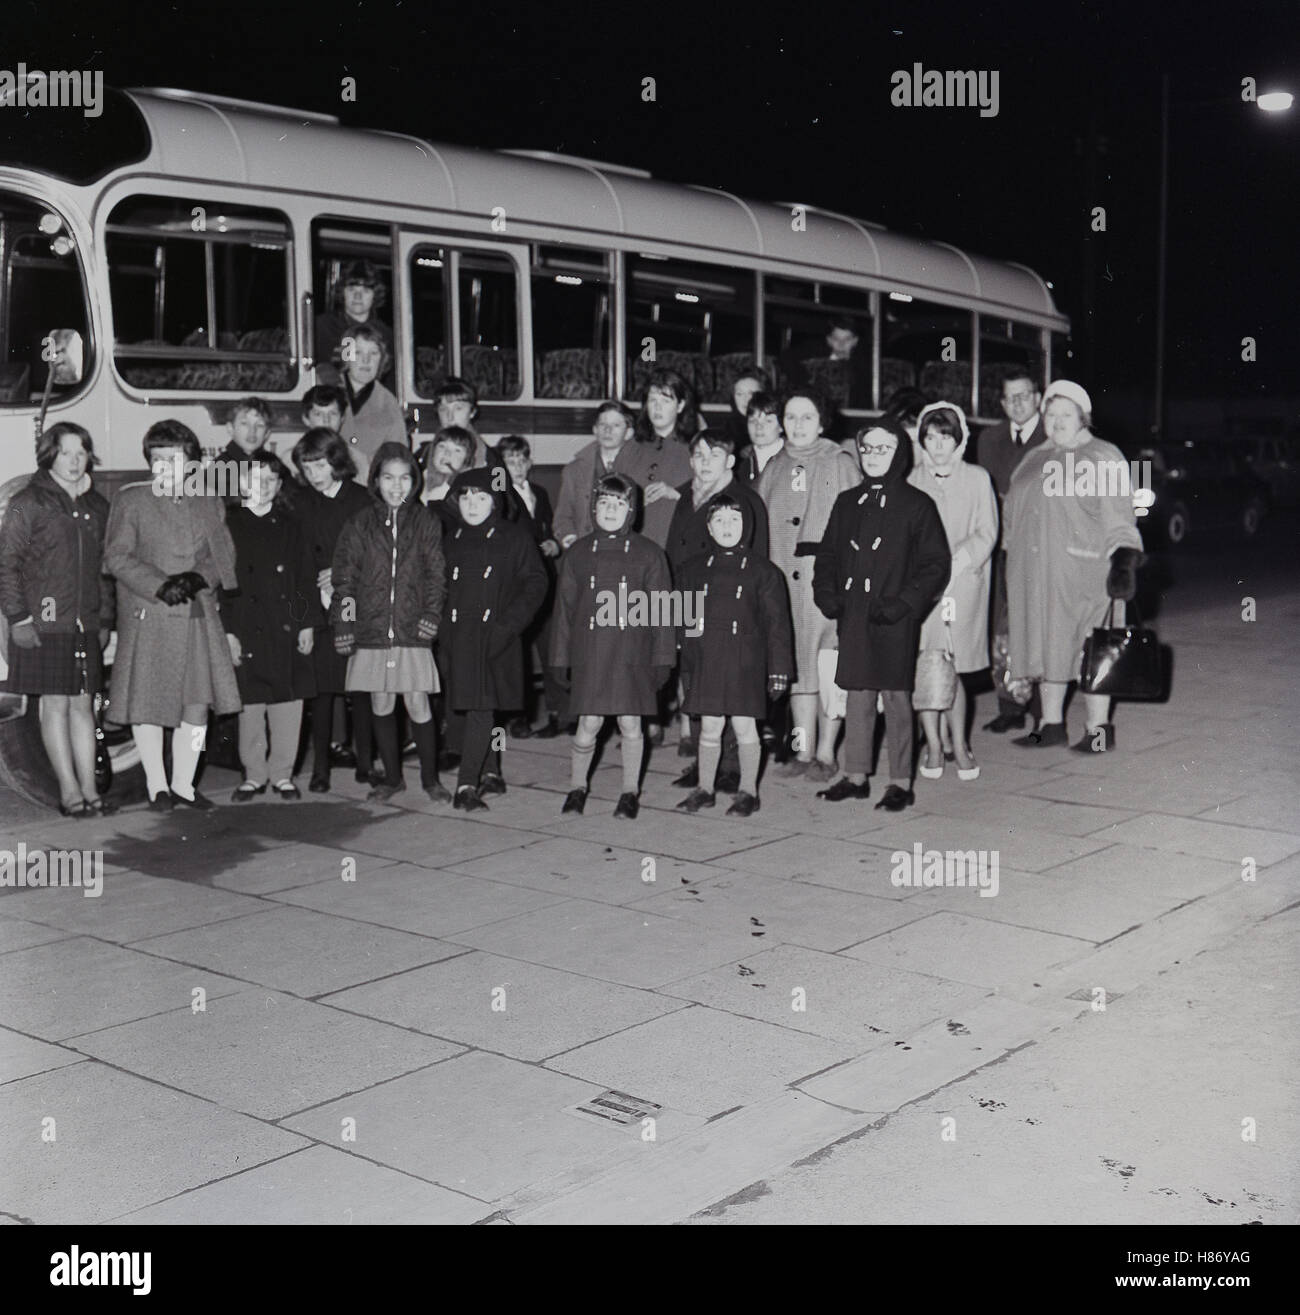 1965, aufgeregt historische, Abendzeit und eine Gruppe von kleinen Kindern im Wintermäntel mit begleitenden Erwachsenen-Line-up für ein Bild vor dem Einsteigen in einen Bus für einen Ausflug mit Übernachtung, England. Stockfoto